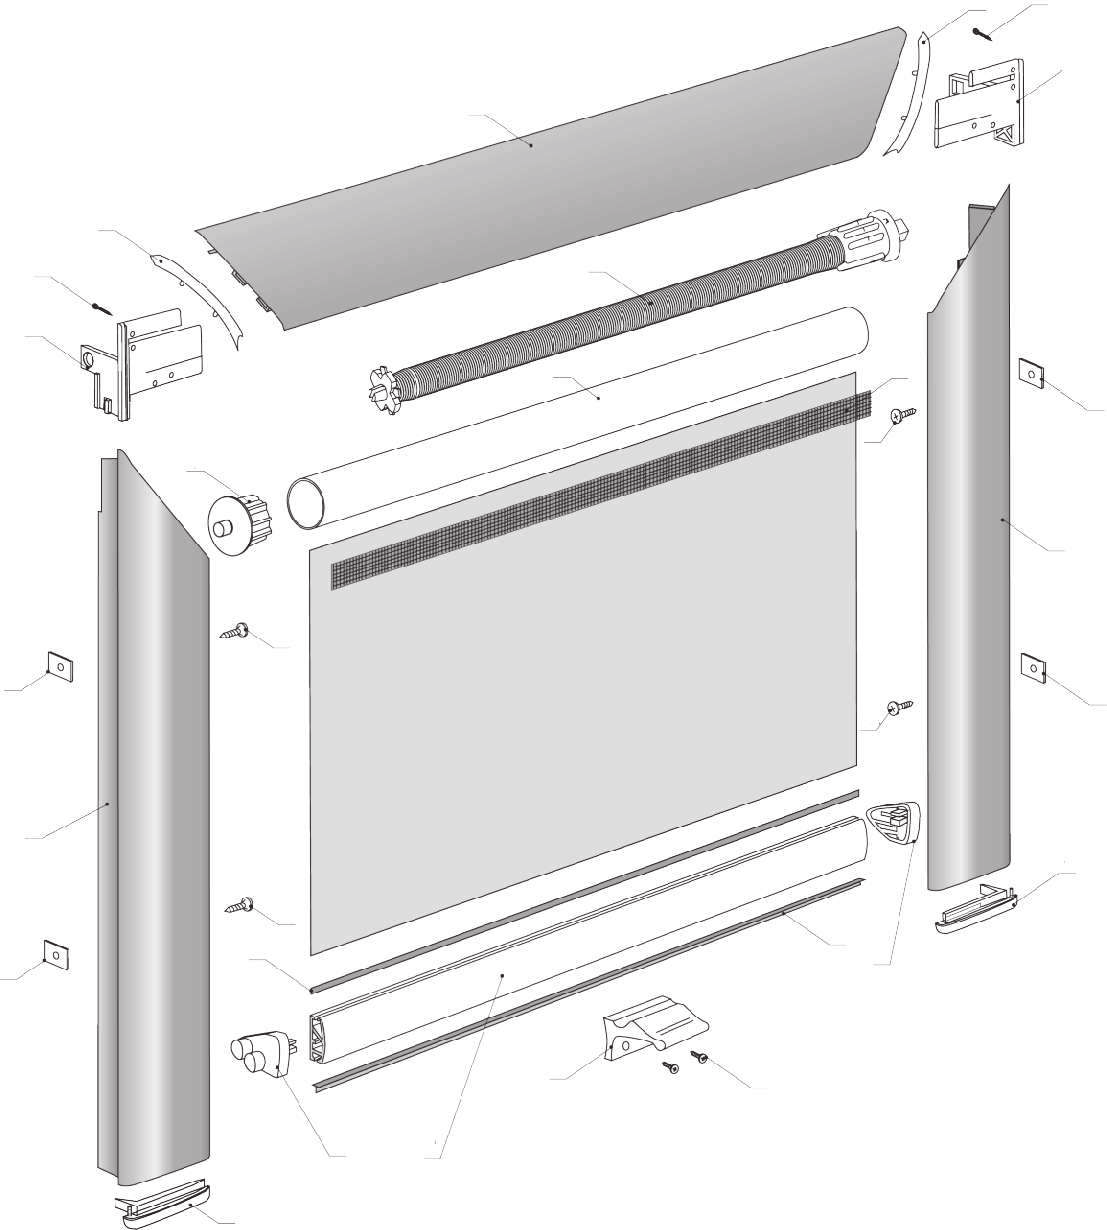 SYSTEM ROLETKI DACHOWEJ - DEKOLUX Roletka DEKOLUX przeznaczona jest do okien dachowych. Wyposa ona jest w wygodny mechanizm sprê ynowy, który umo liwia samoczynne zwijanie materia³u do kasety.